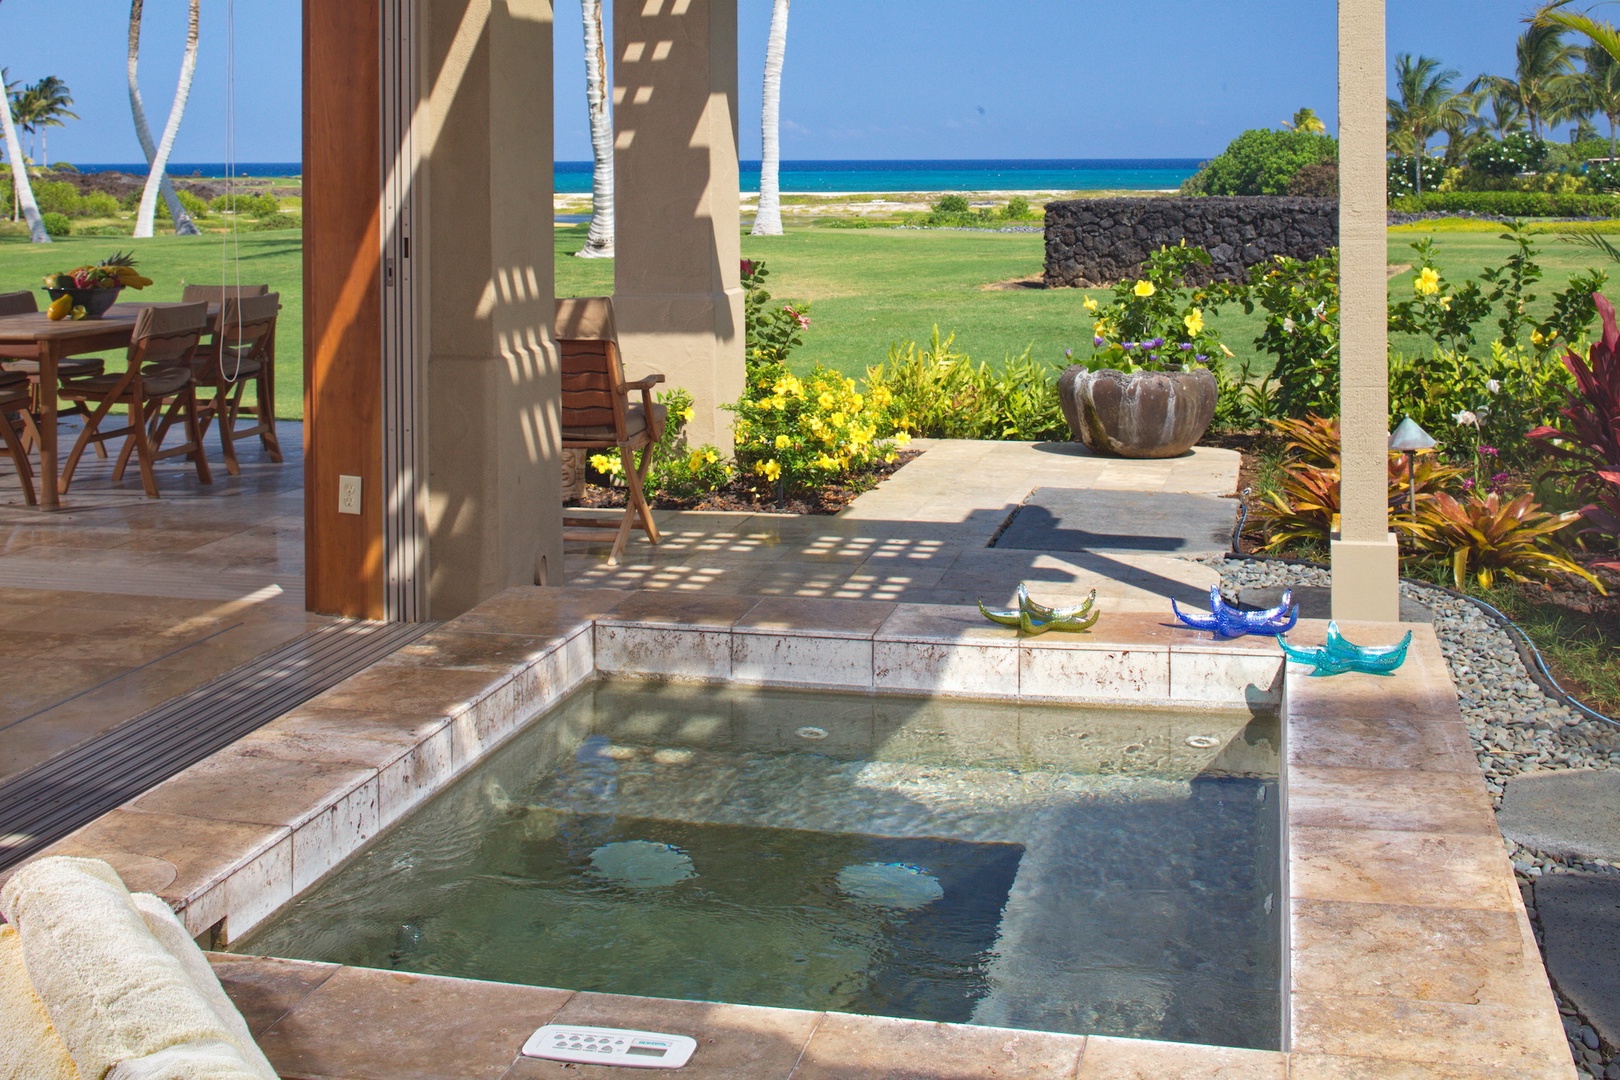 Kailua Kona Vacation Rentals, 3BD Golf Villa (3101) at Four Seasons Resort at Hualalai - Private hot tub on generous lanai w/ front row ocean & golf course views.